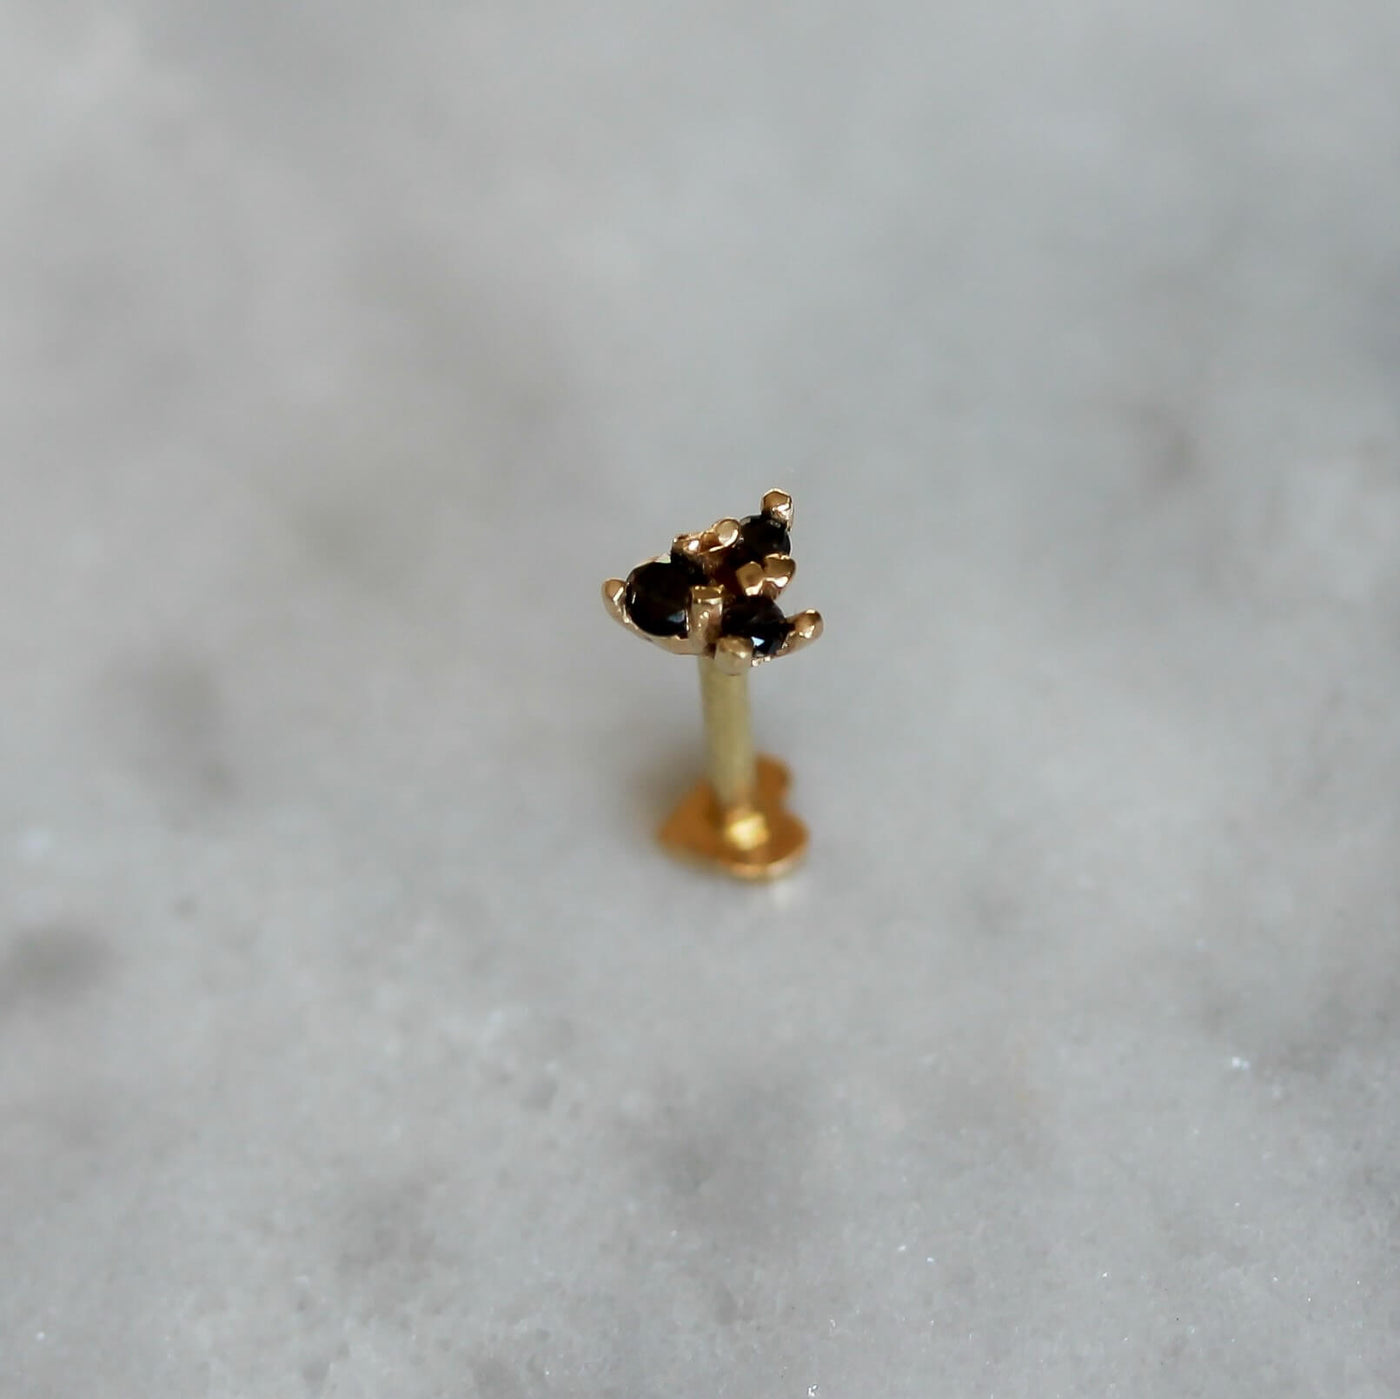 עגיל פירסינג אריס יהלומים שחורים זהב 14K Earrings 